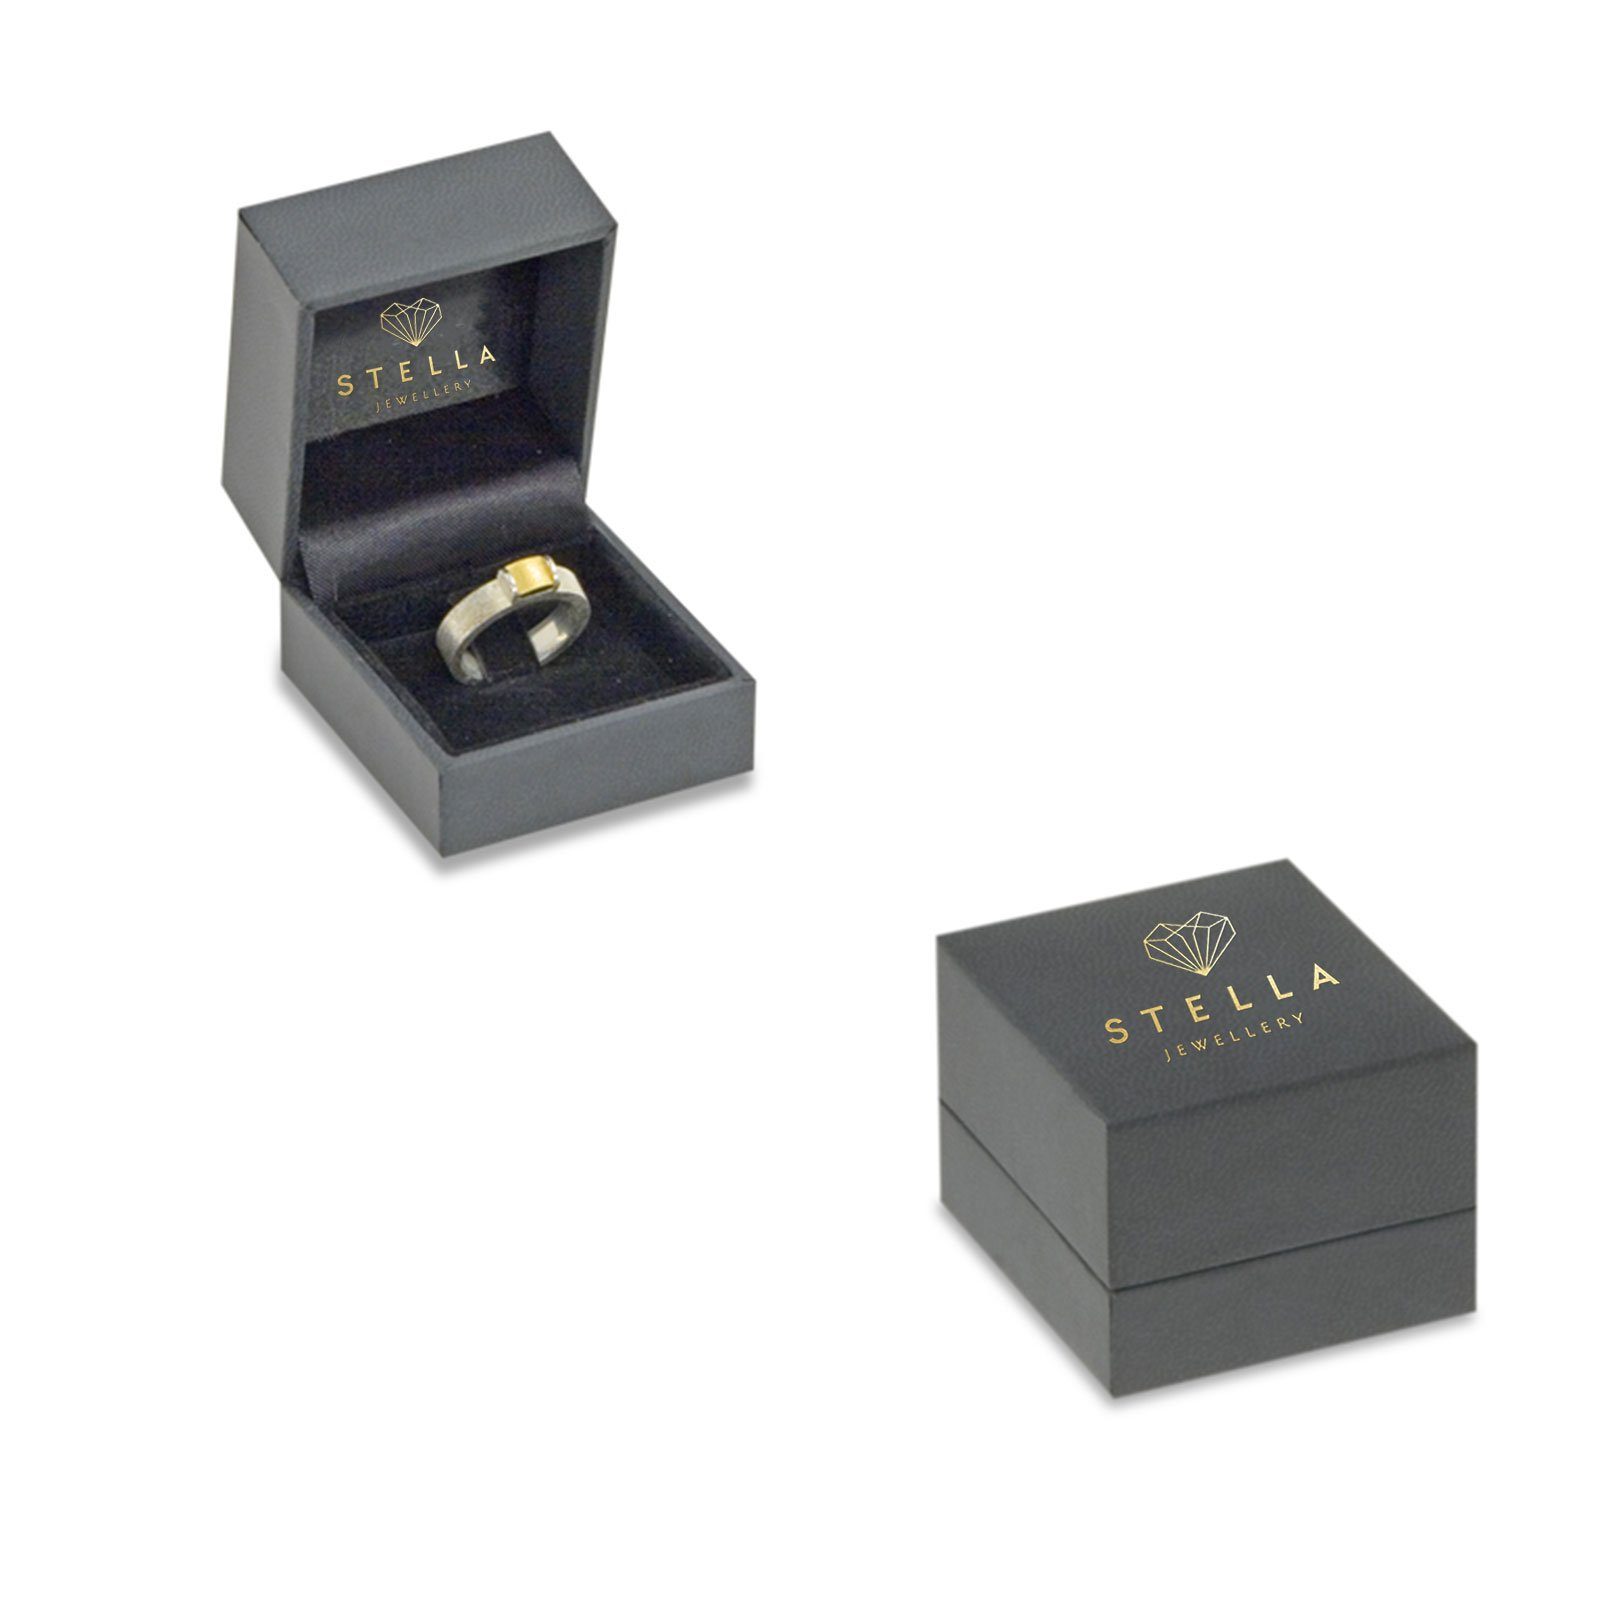 Weißgold (inkl. - Gr. 585er Stella-Jewellery Diamant Verlobungsring Brillant Etui), Verlobungsring mit - 0,35ct. 54 Poliert